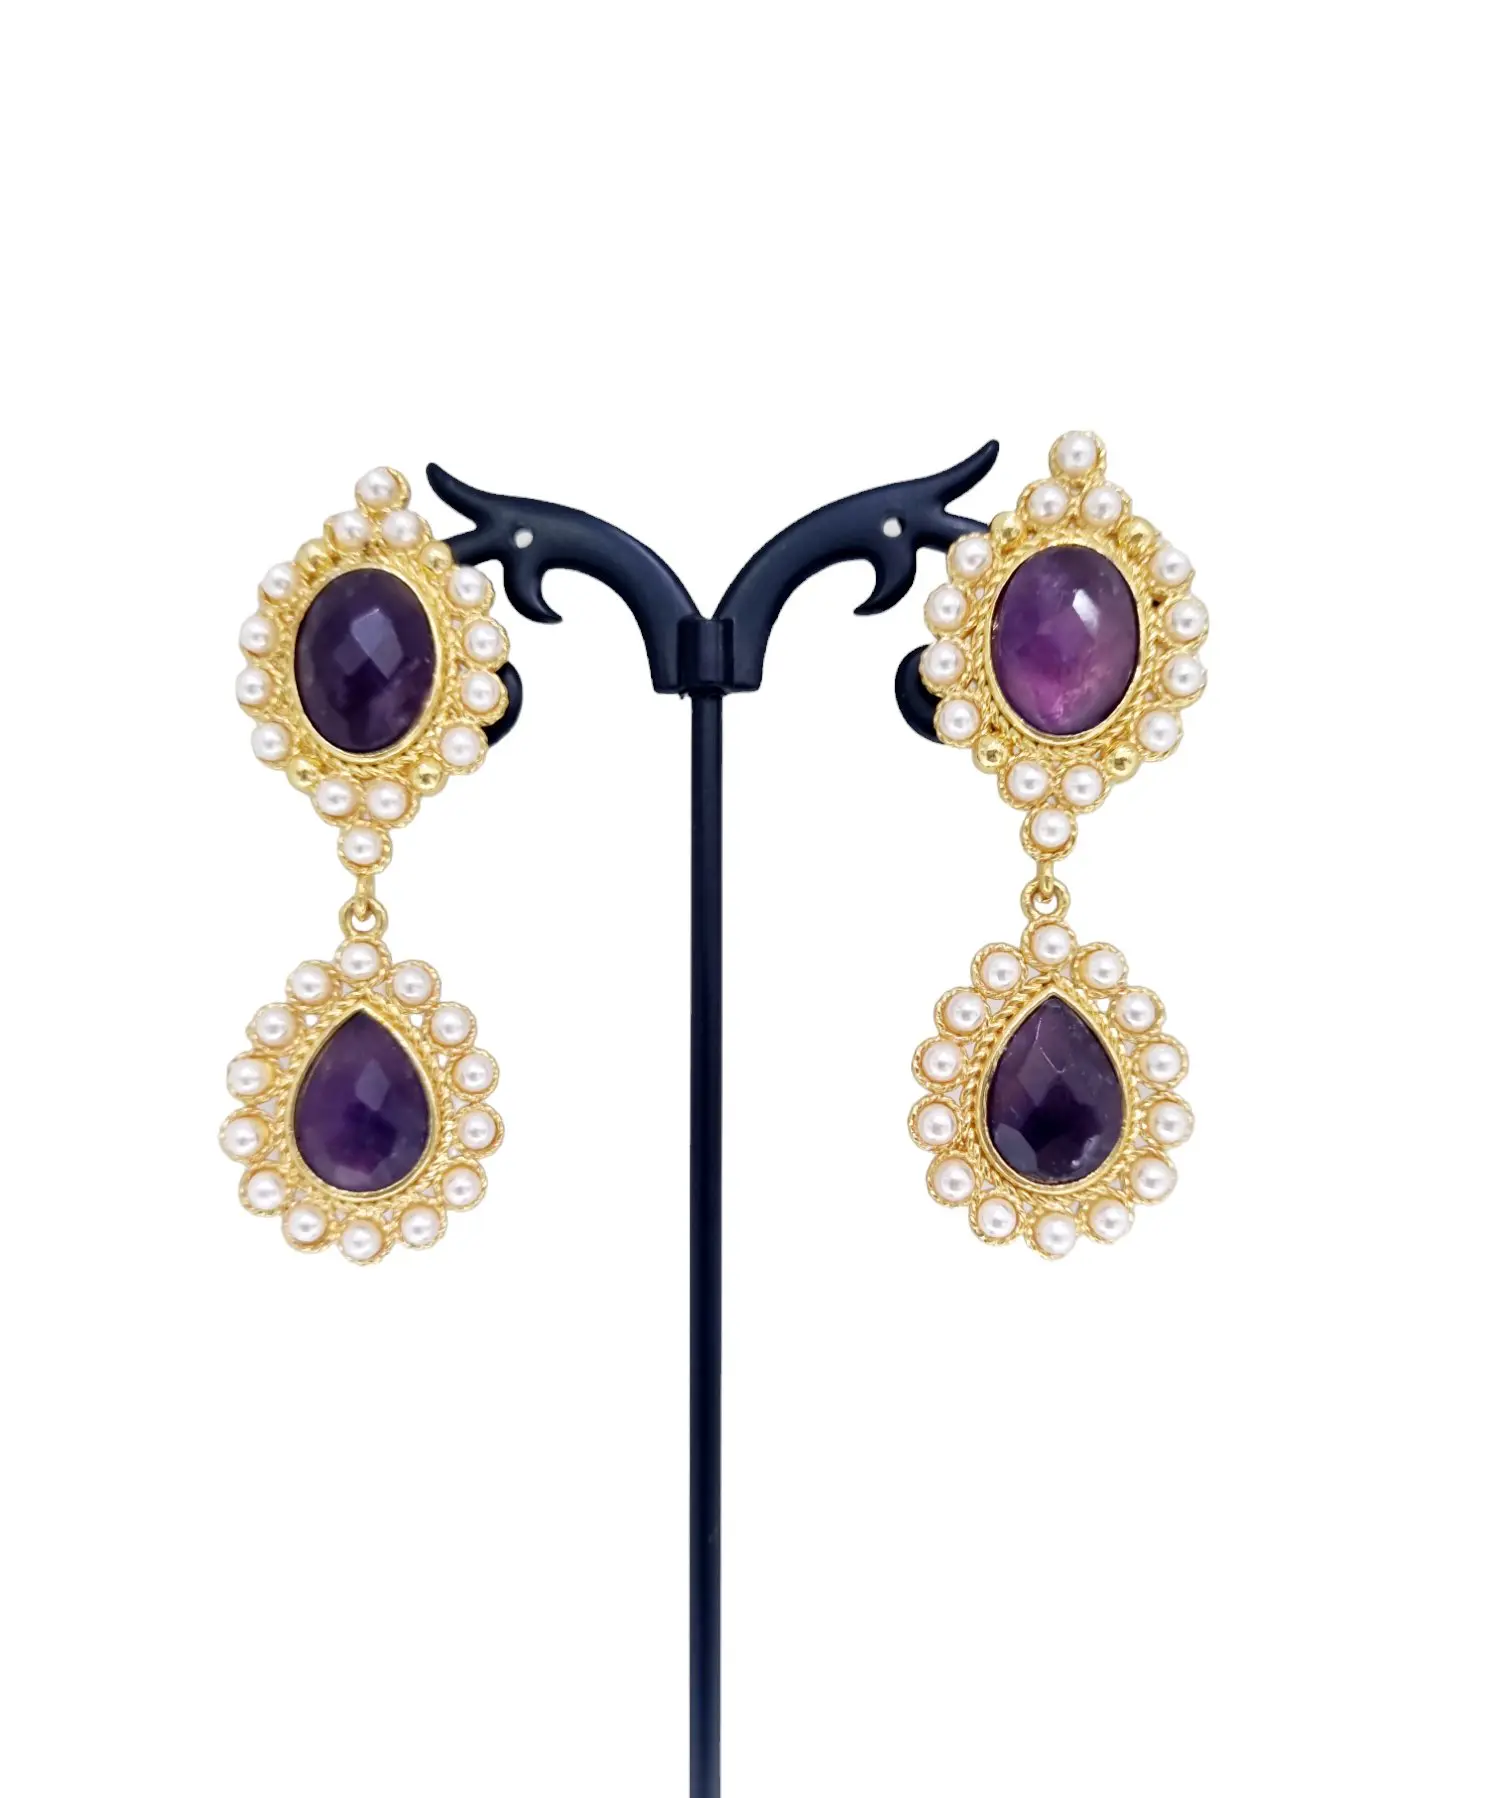 Ohrringe aus Amethyst und mallorquinischen Perlen in Messing gefasst – elegantes und raffiniertes Accessoire